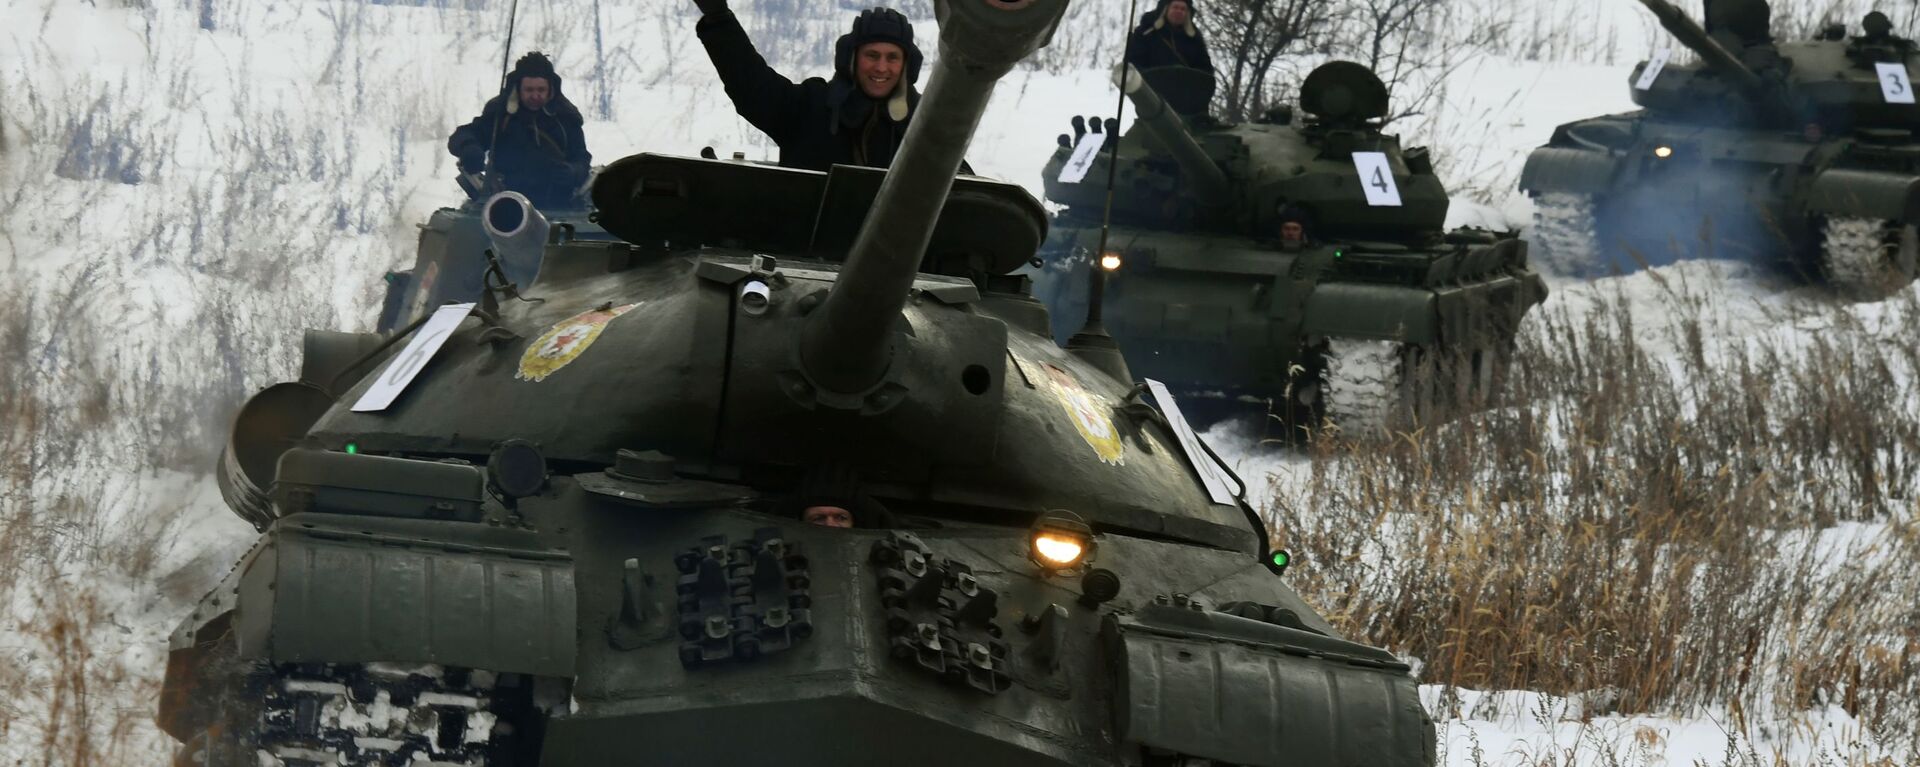 Советский тяжелый танк ИС-3 во время показательного выезда бронетанковой техники  в Приморском крае - Sputnik Ўзбекистон, 1920, 23.11.2021